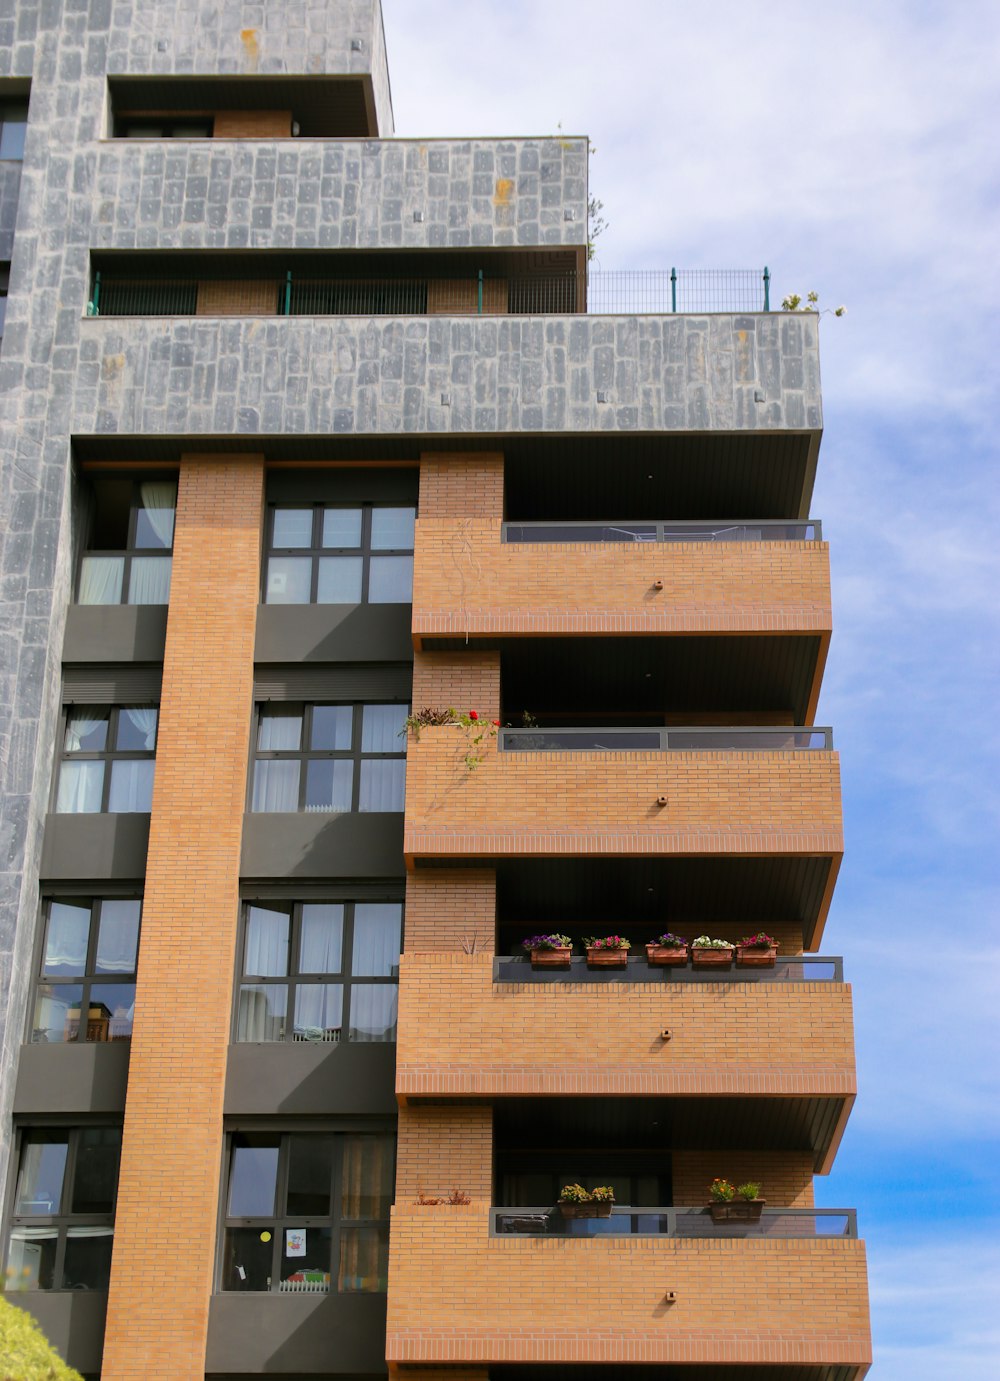 Un edificio alto de ladrillo con balcones en los balcones